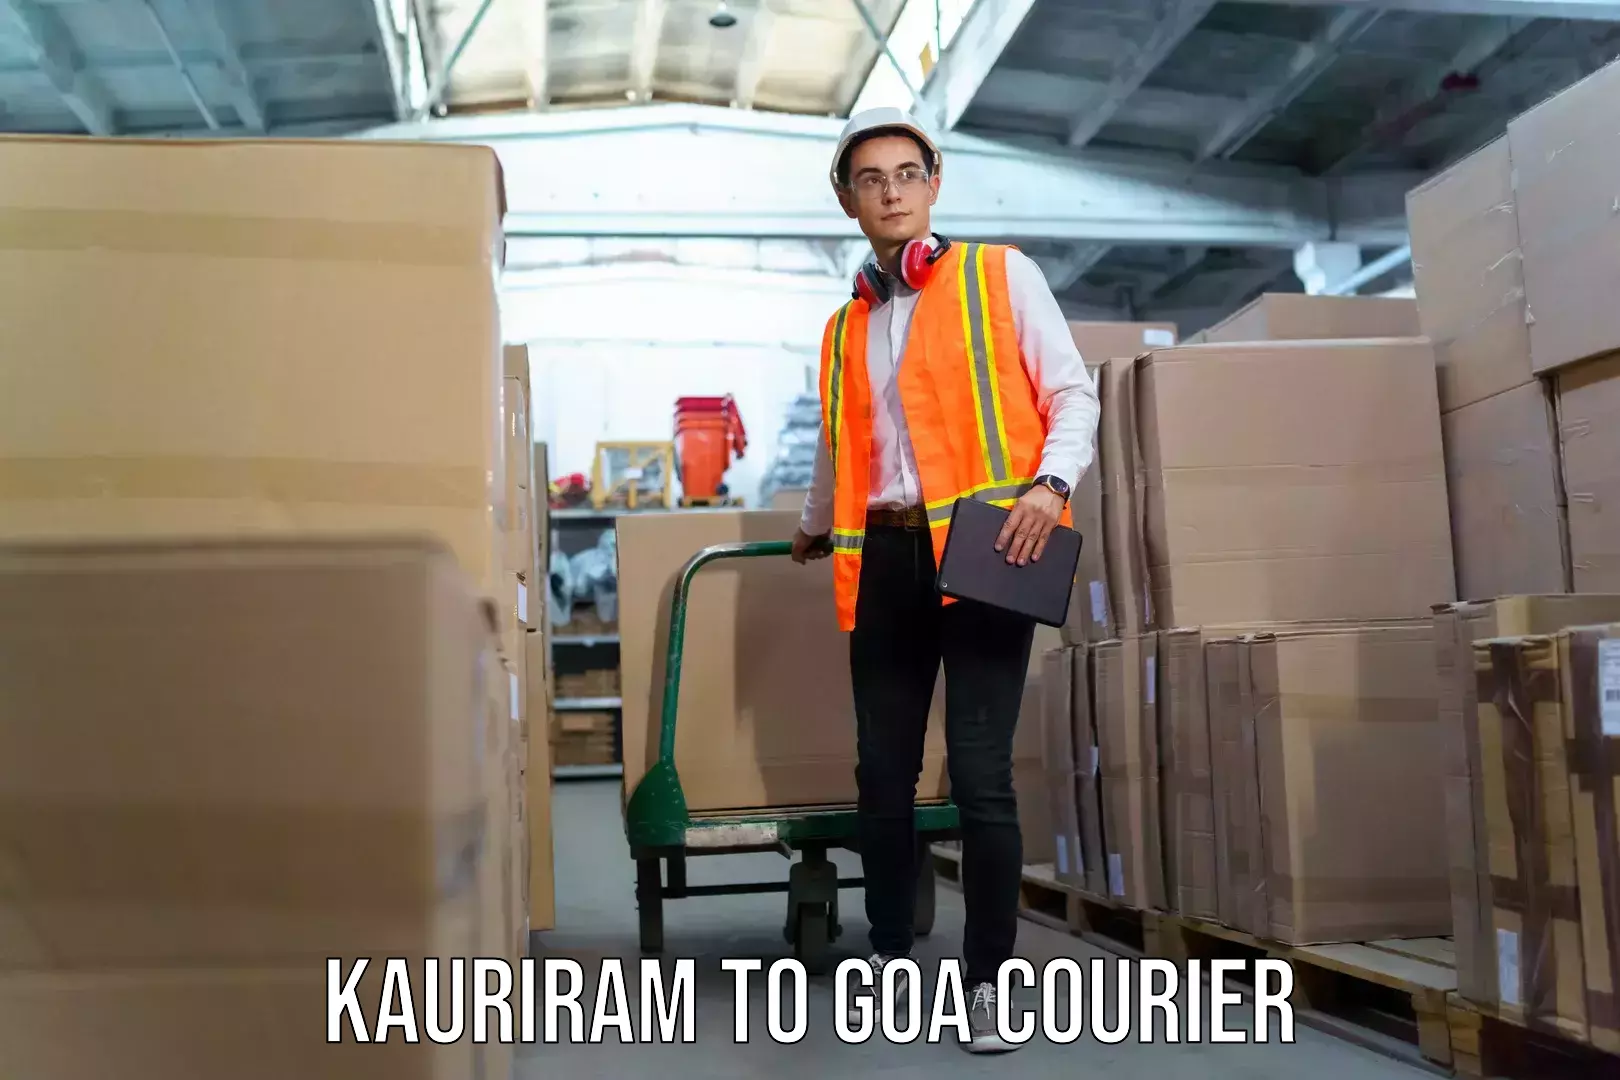 Luggage shipment specialists Kauriram to Goa